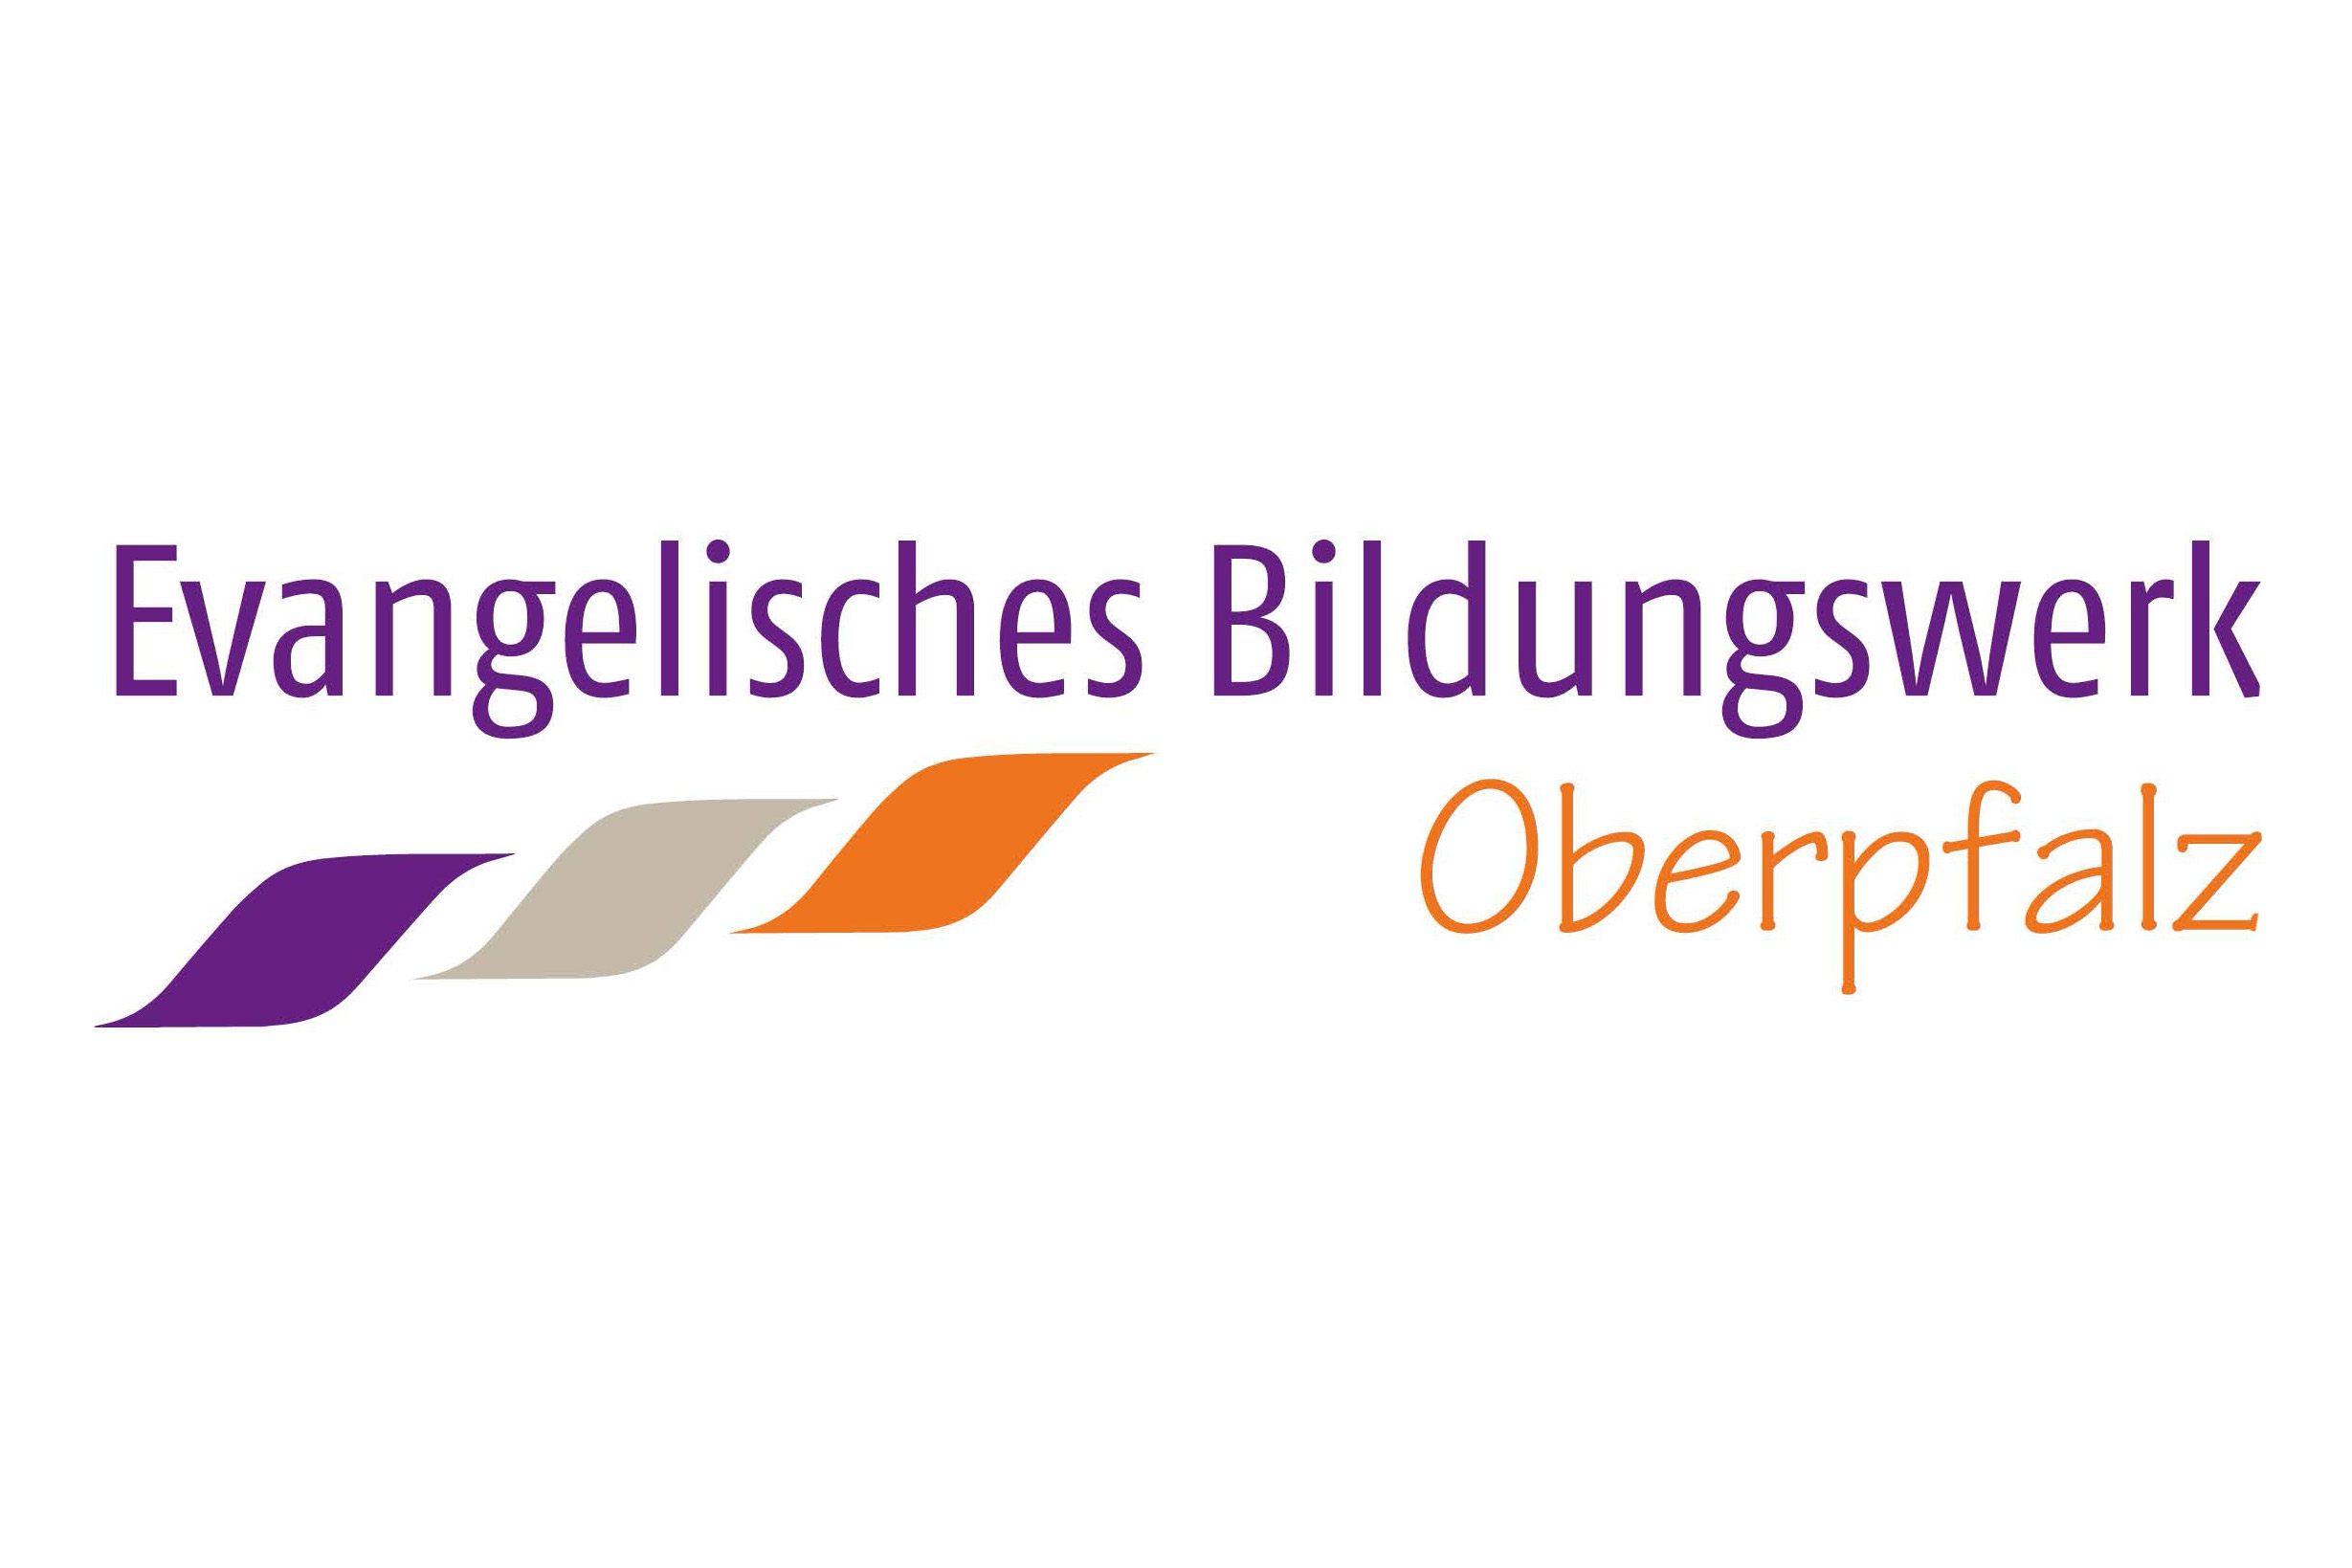 Das Logo des Evangelischen Bildungswerks in der Oberpfalz